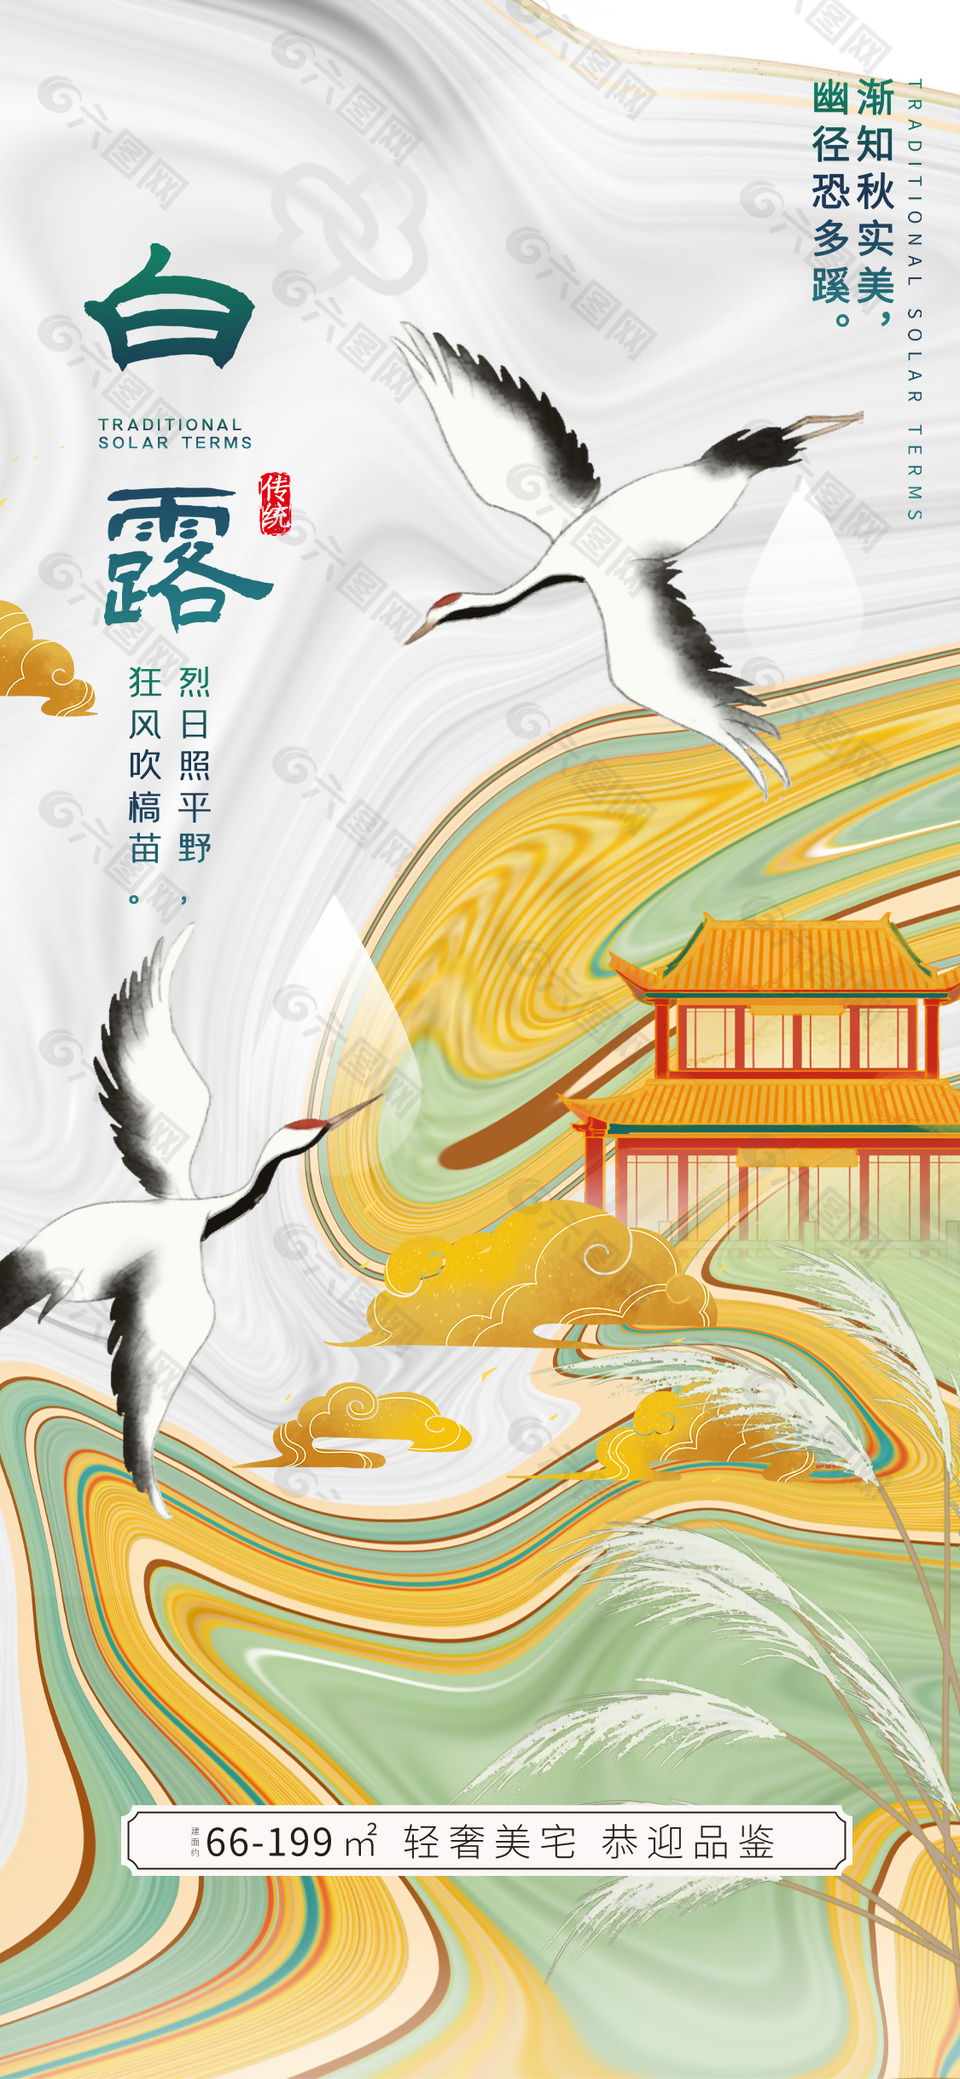 中国风地产白露节气广告宣传全屏海报设计